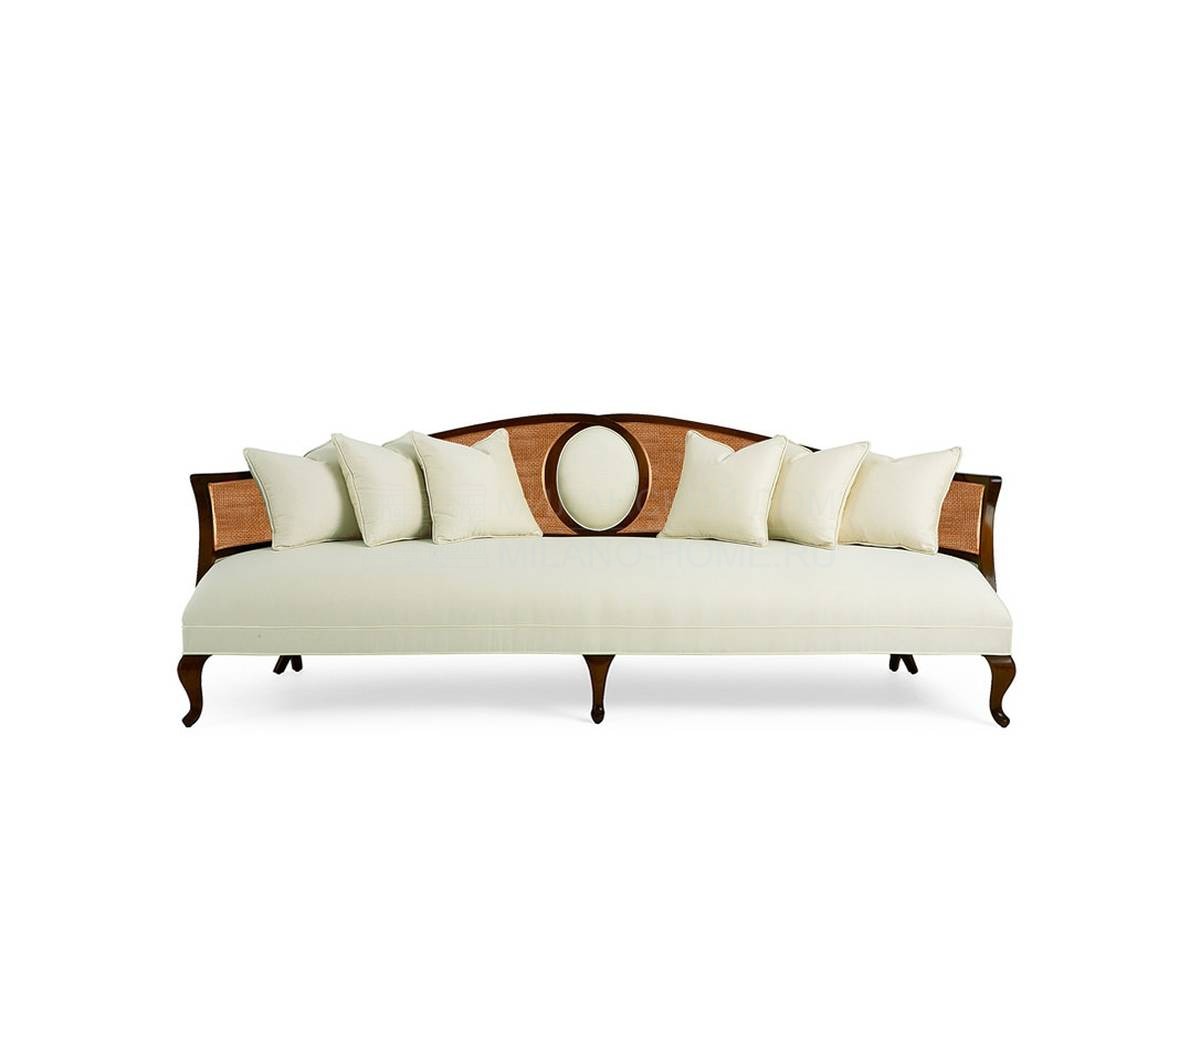 Прямой диван Feraud sofa из США фабрики CHRISTOPHER GUY